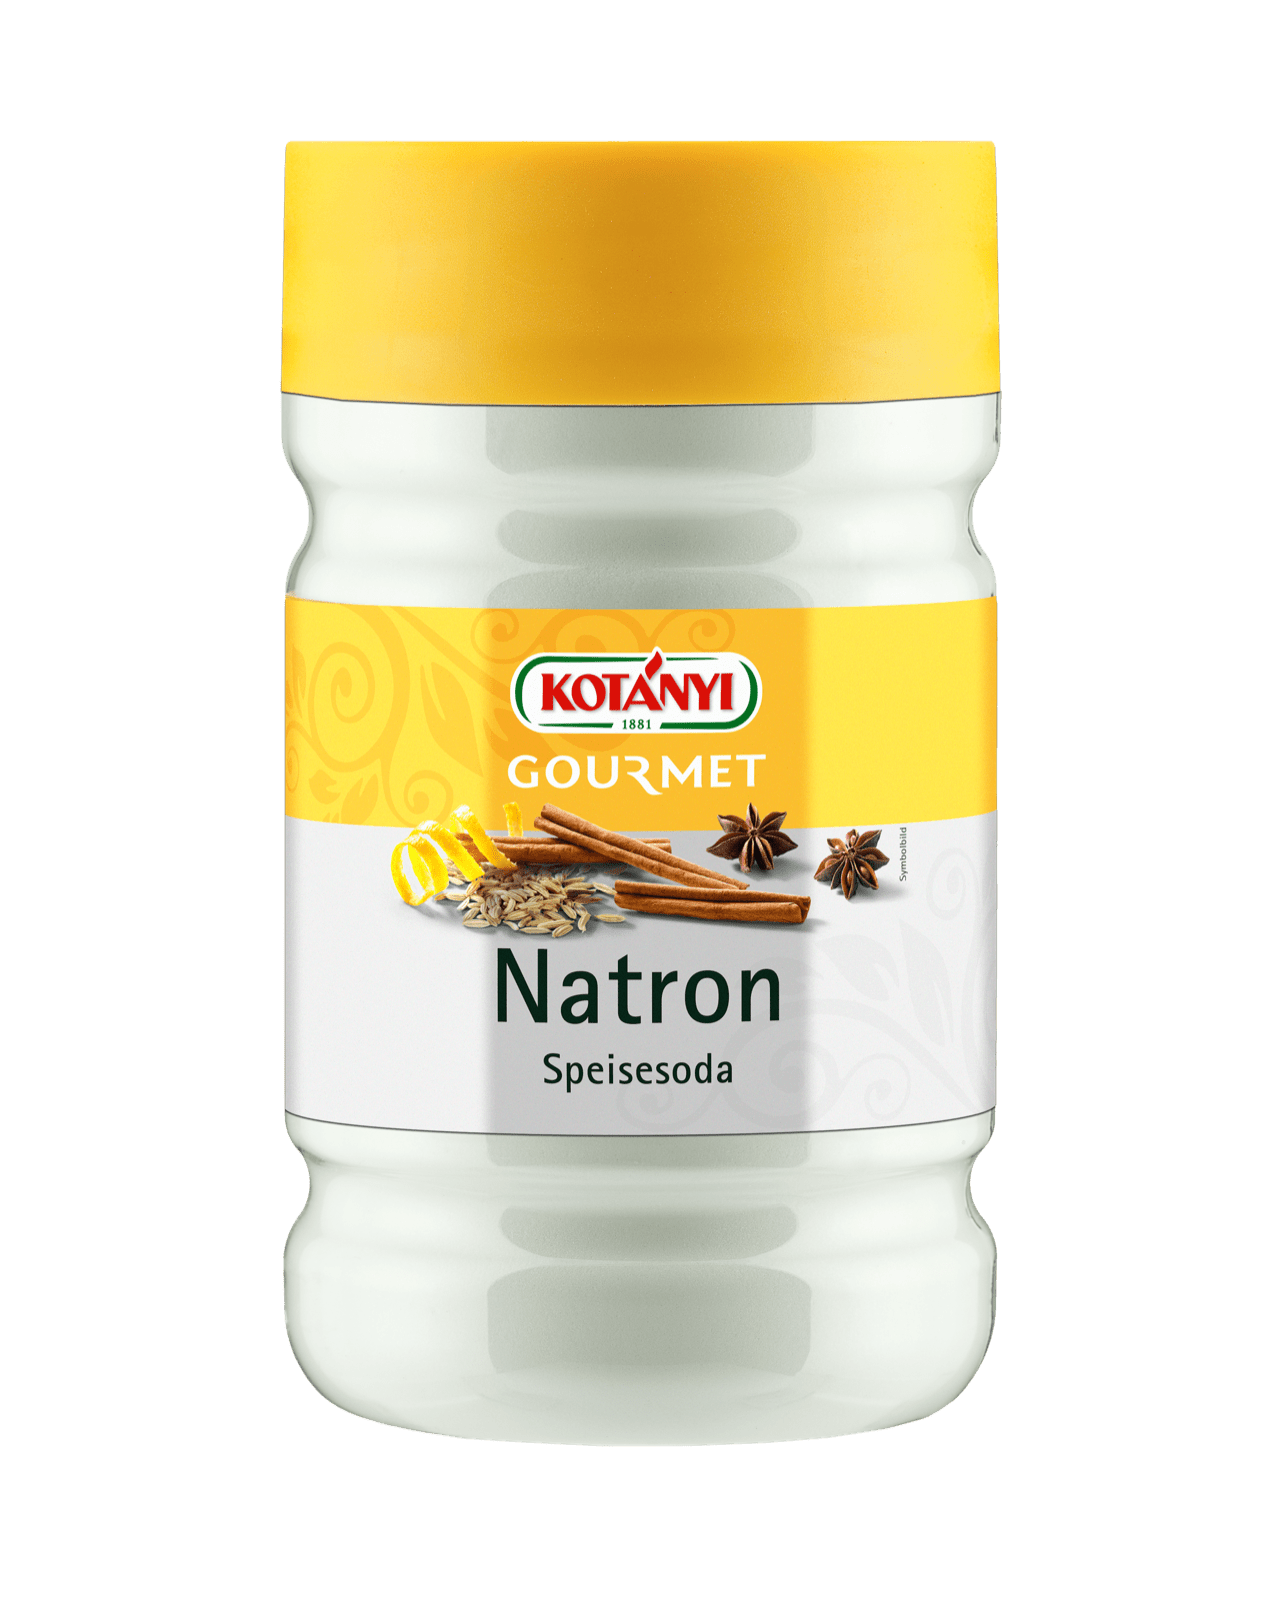 can you eat natron salt